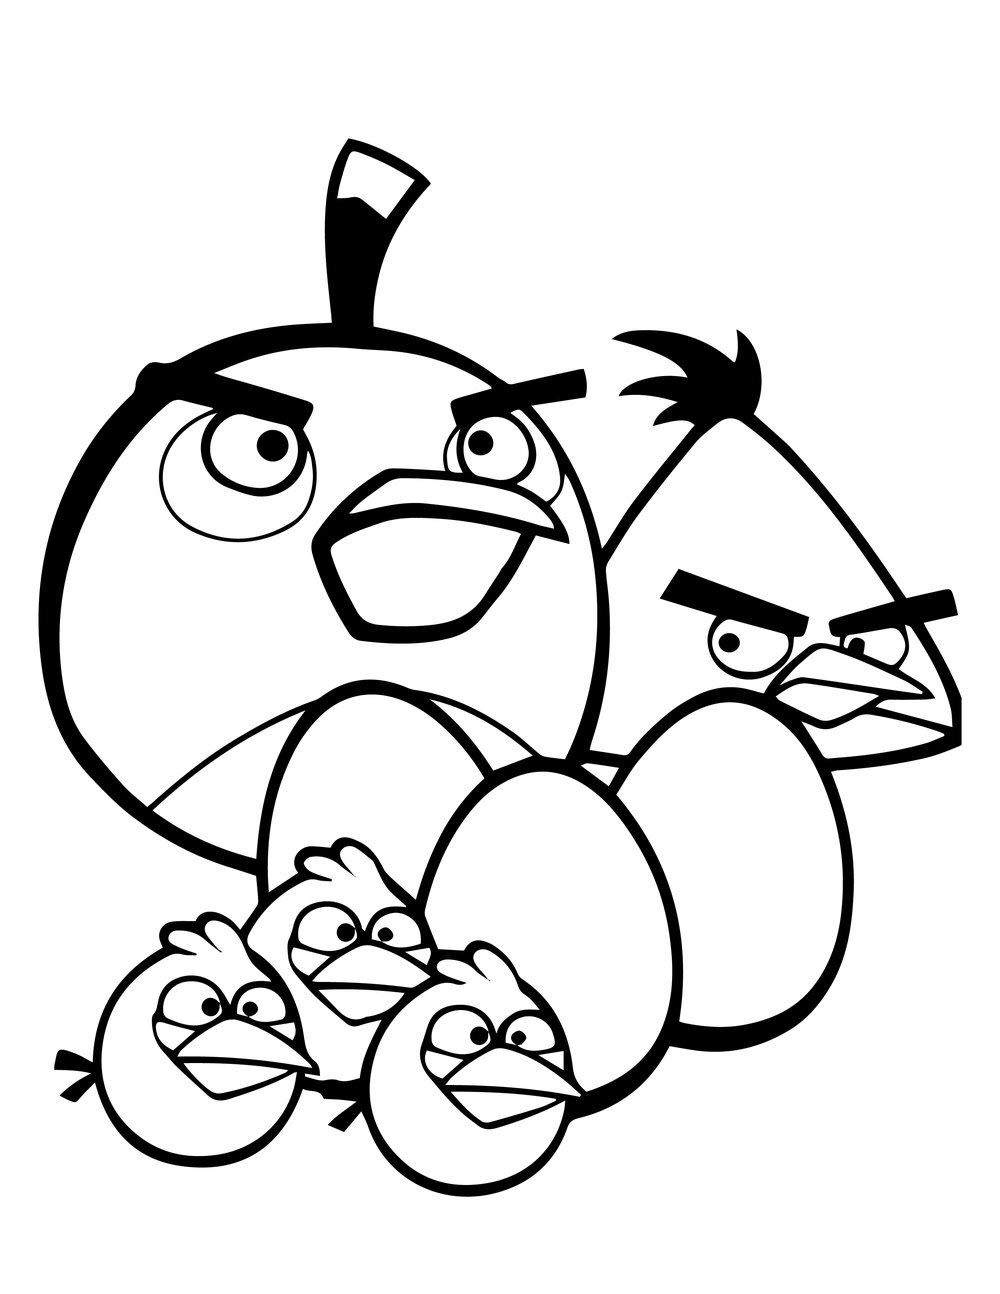 Tranh tô màu Angry Birds đẹp, đơn giản